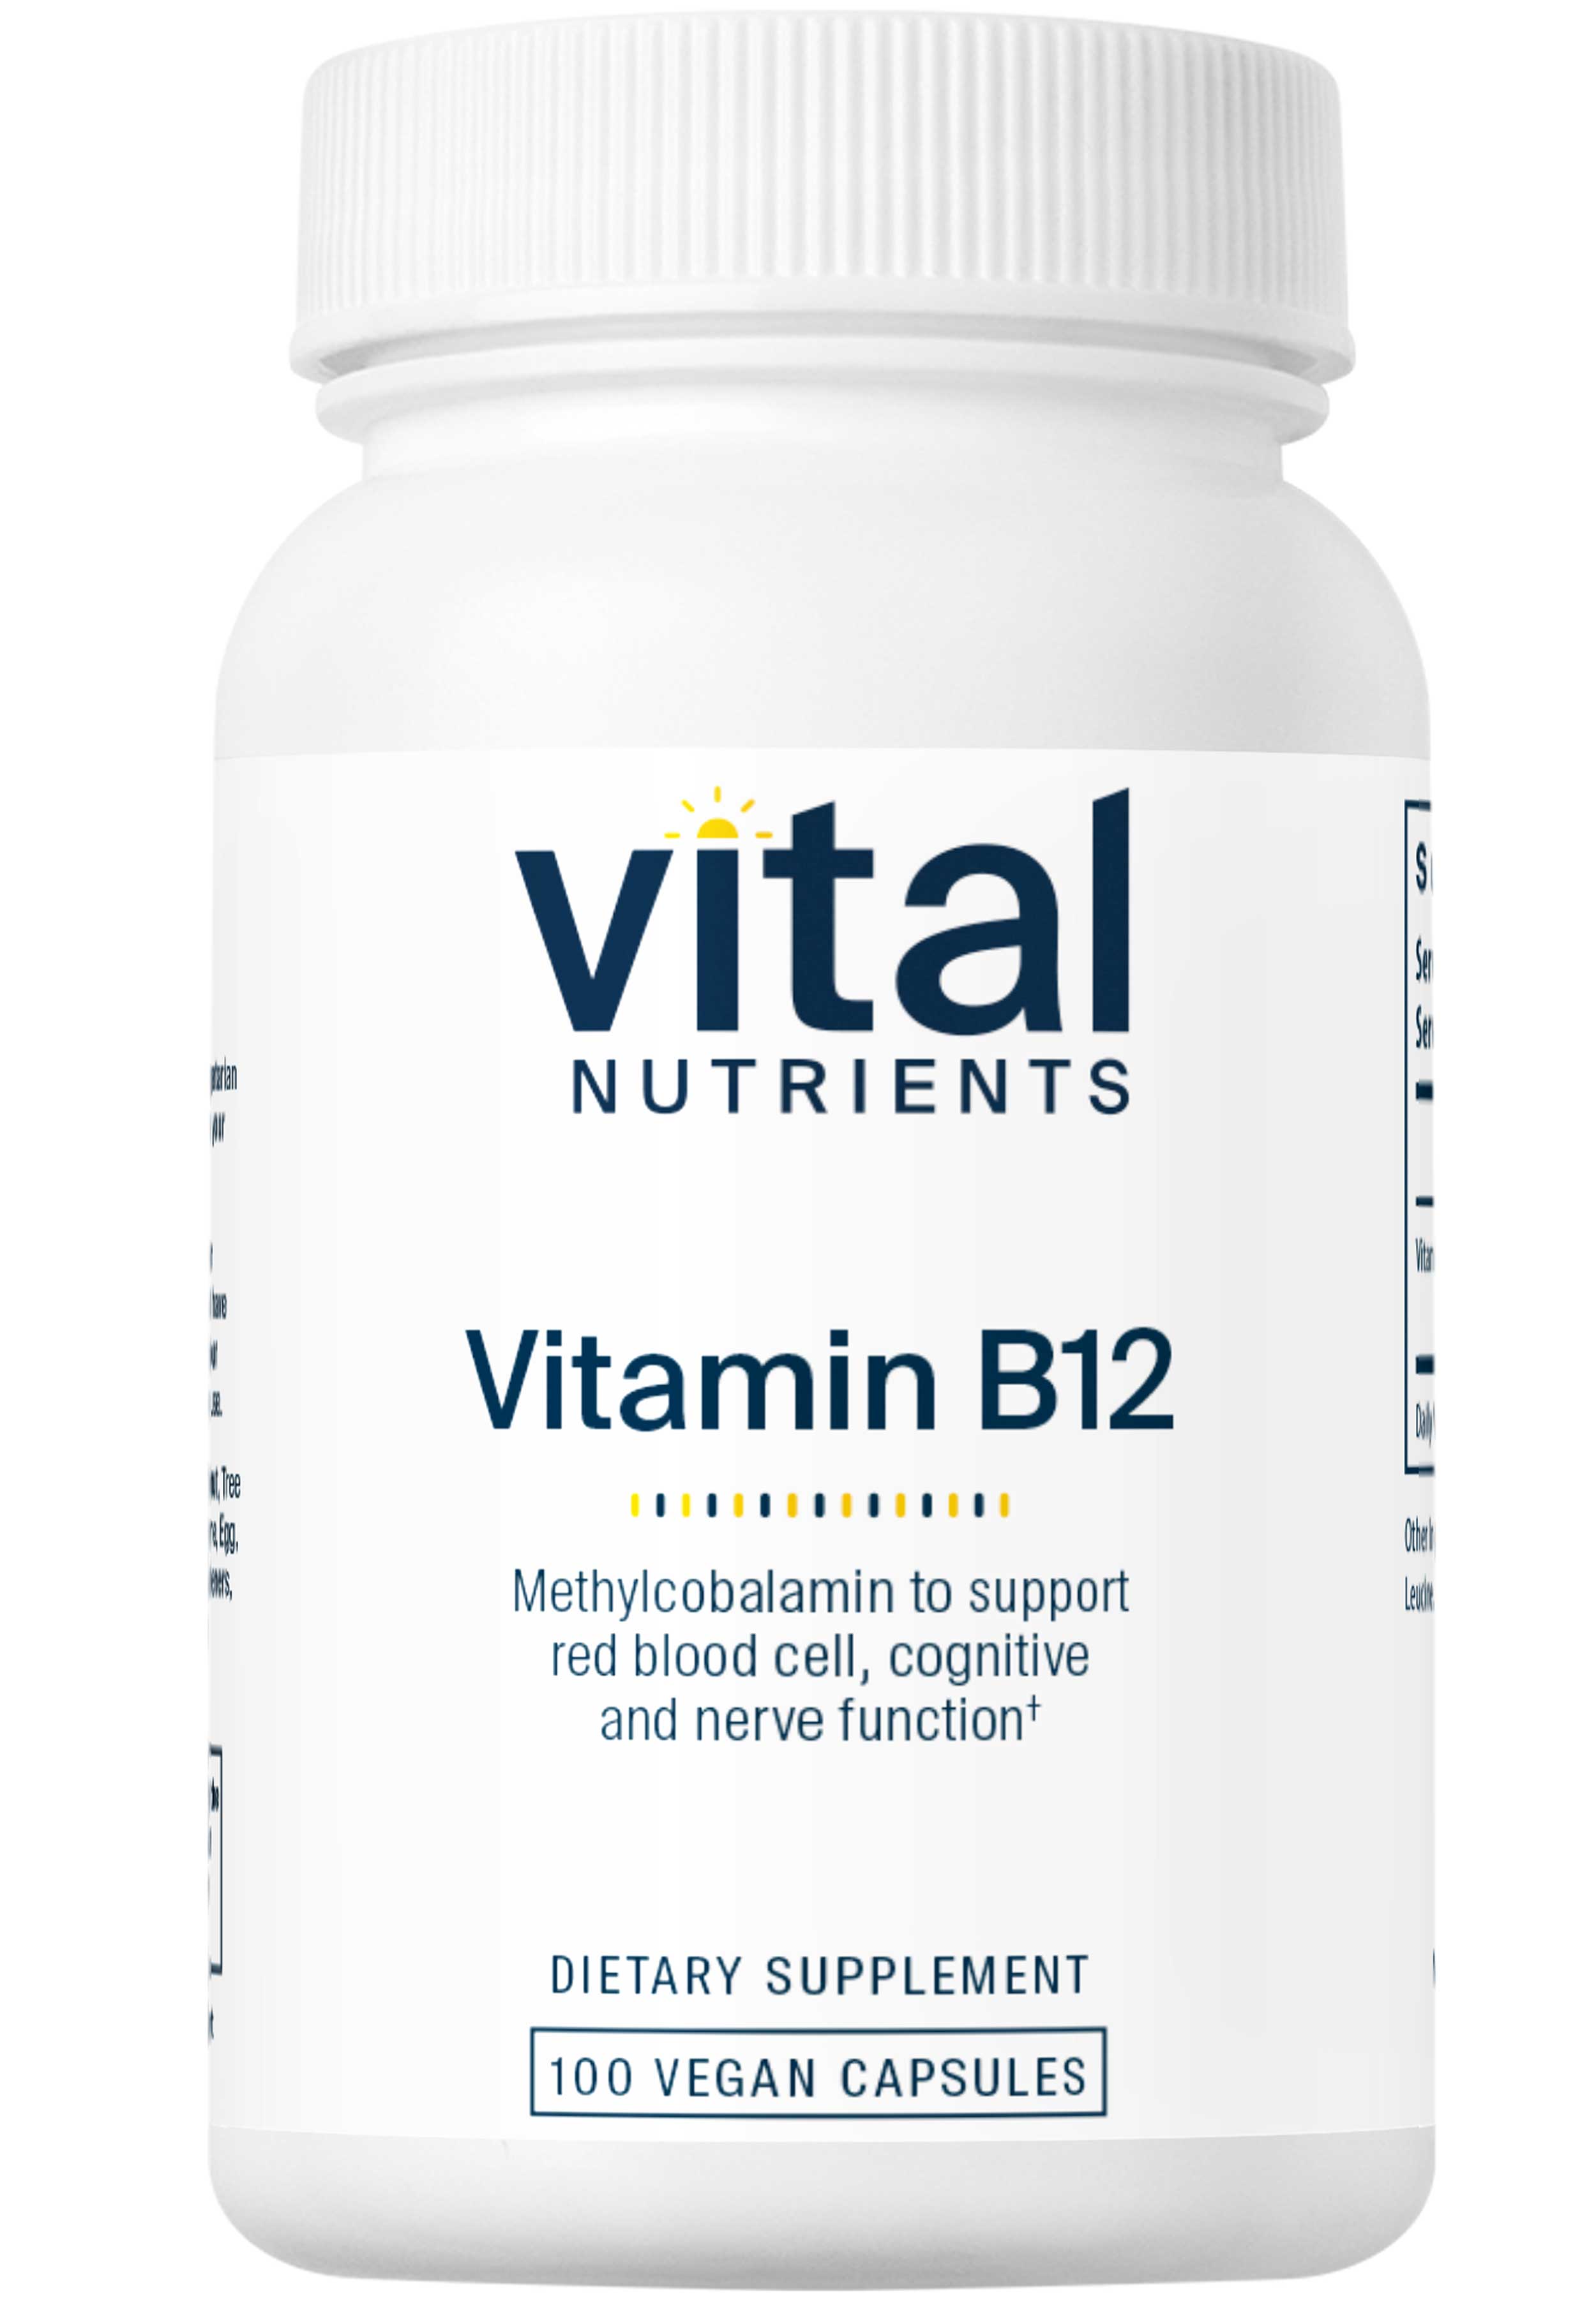 Vital Nutrients Vitamin B12